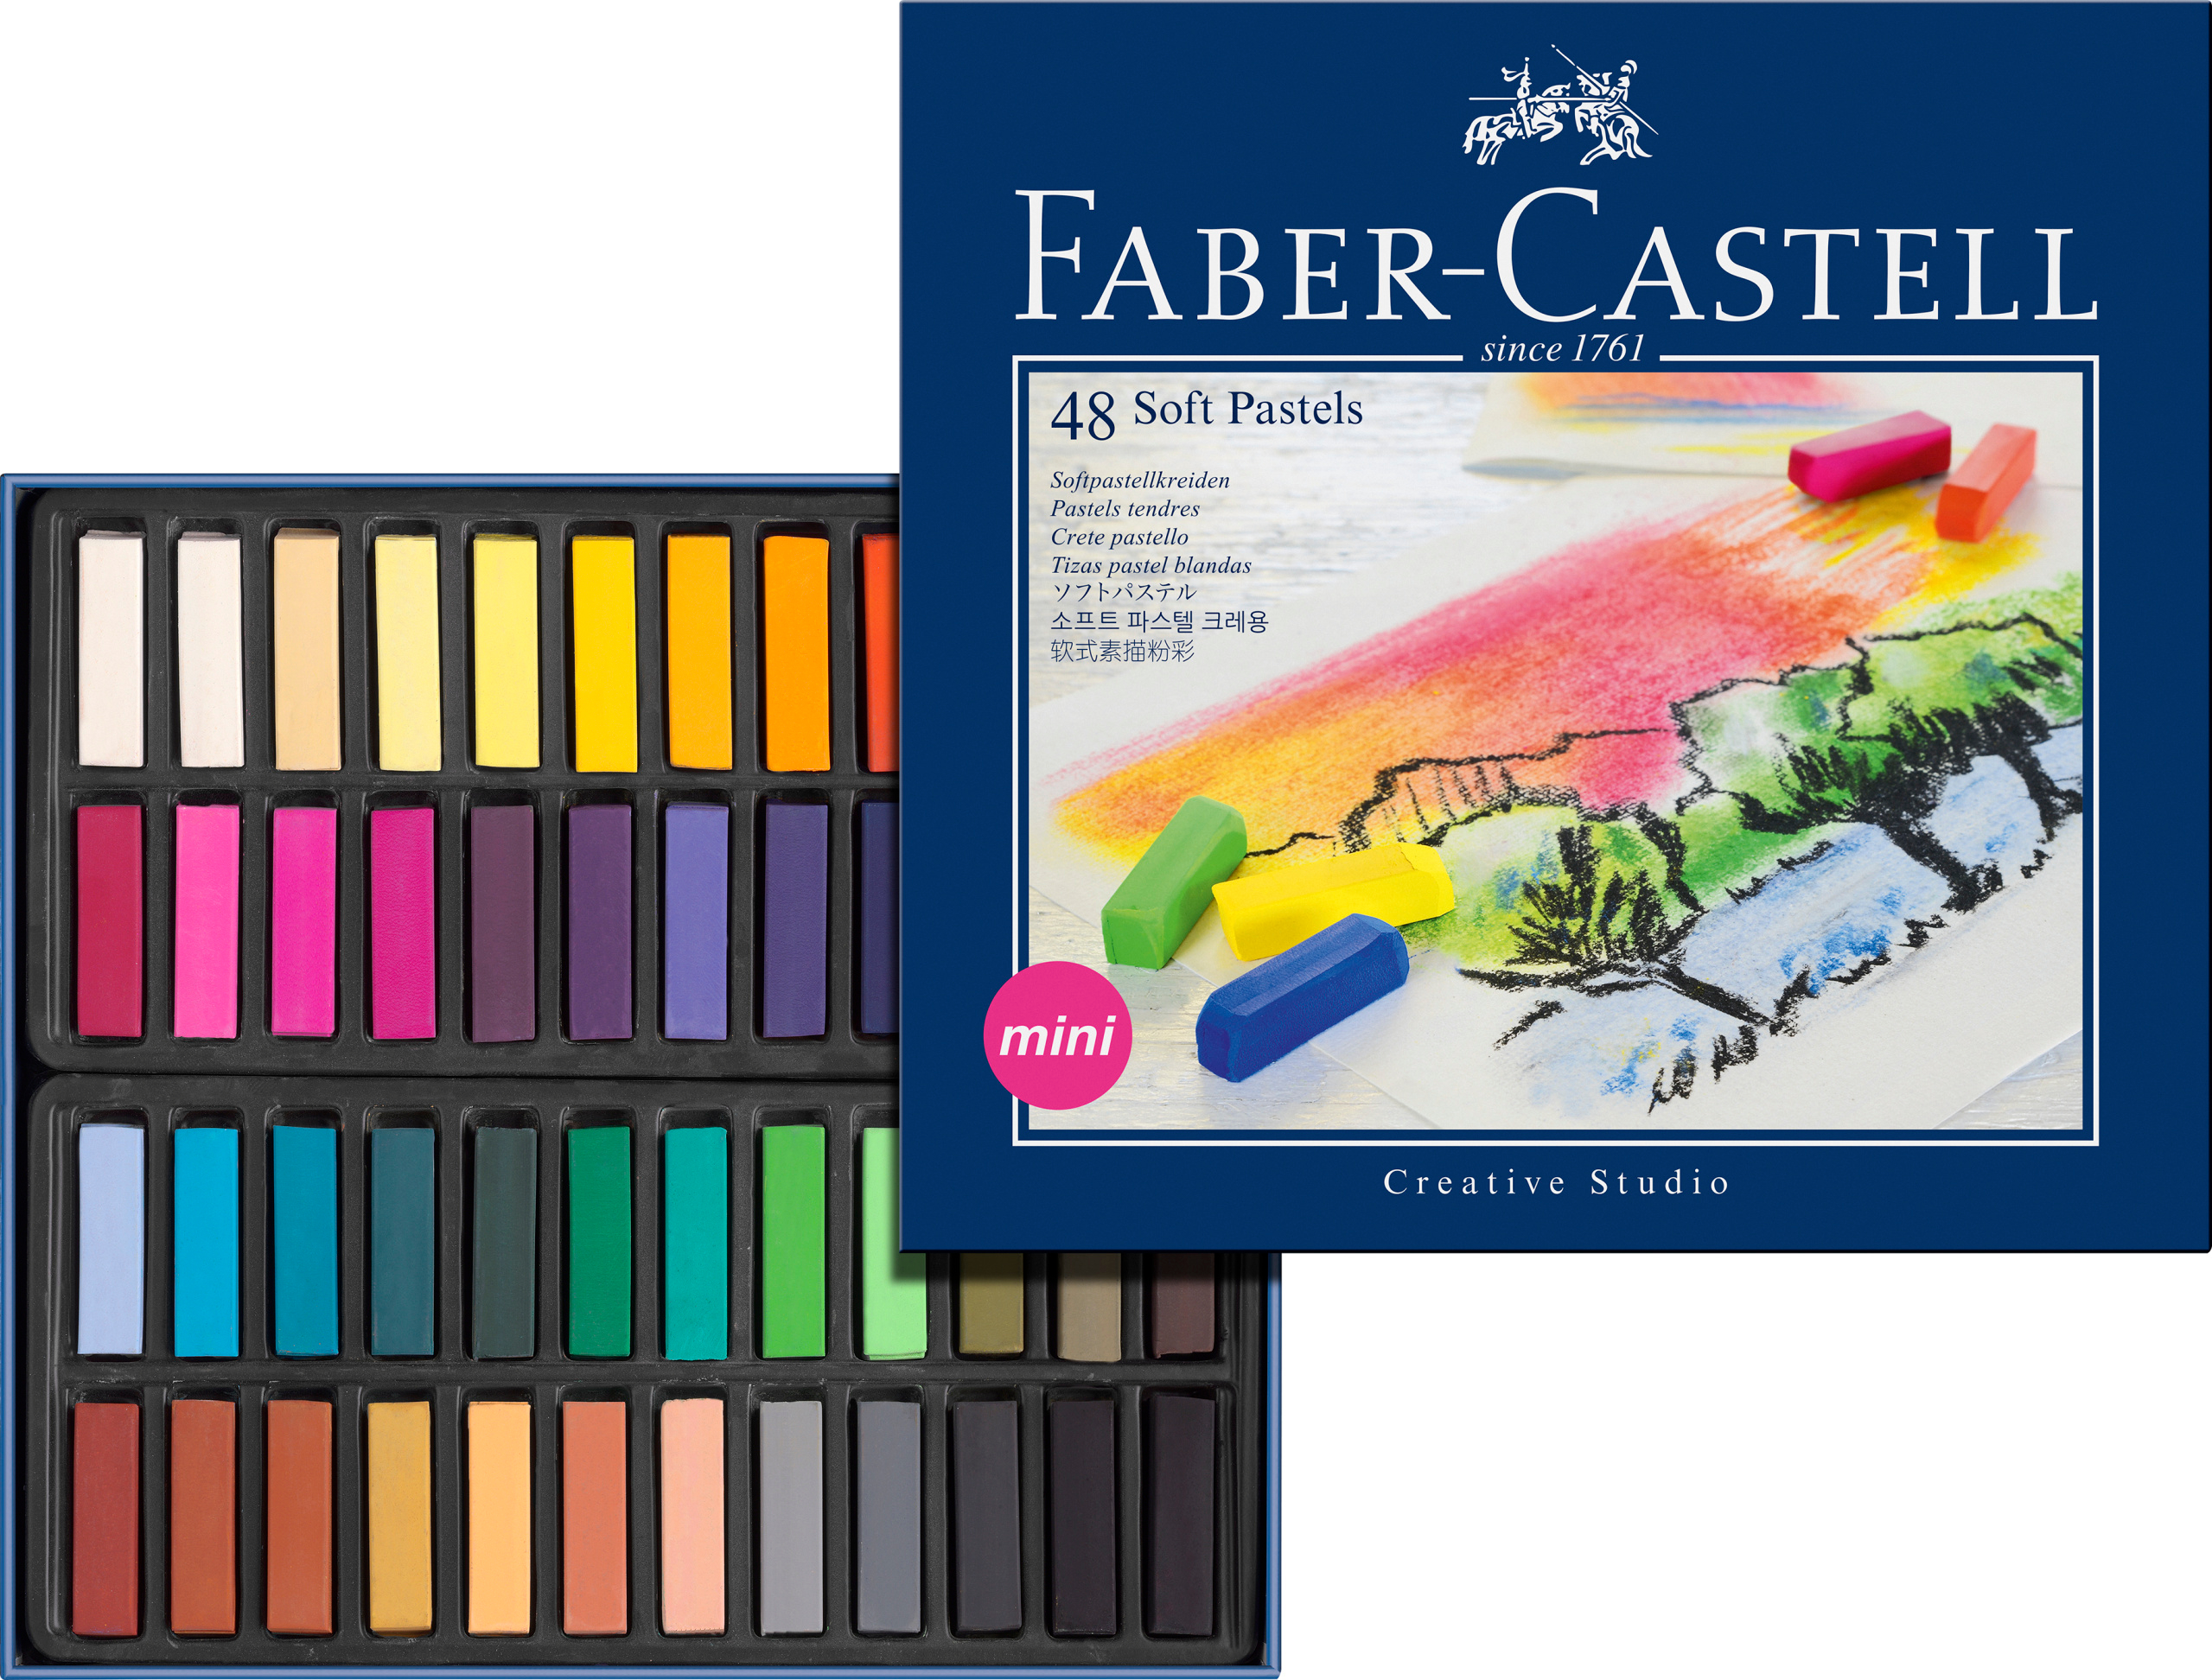 FABER-CASTELL craies pastels Mini 128248 boîte en carton à 48 pce